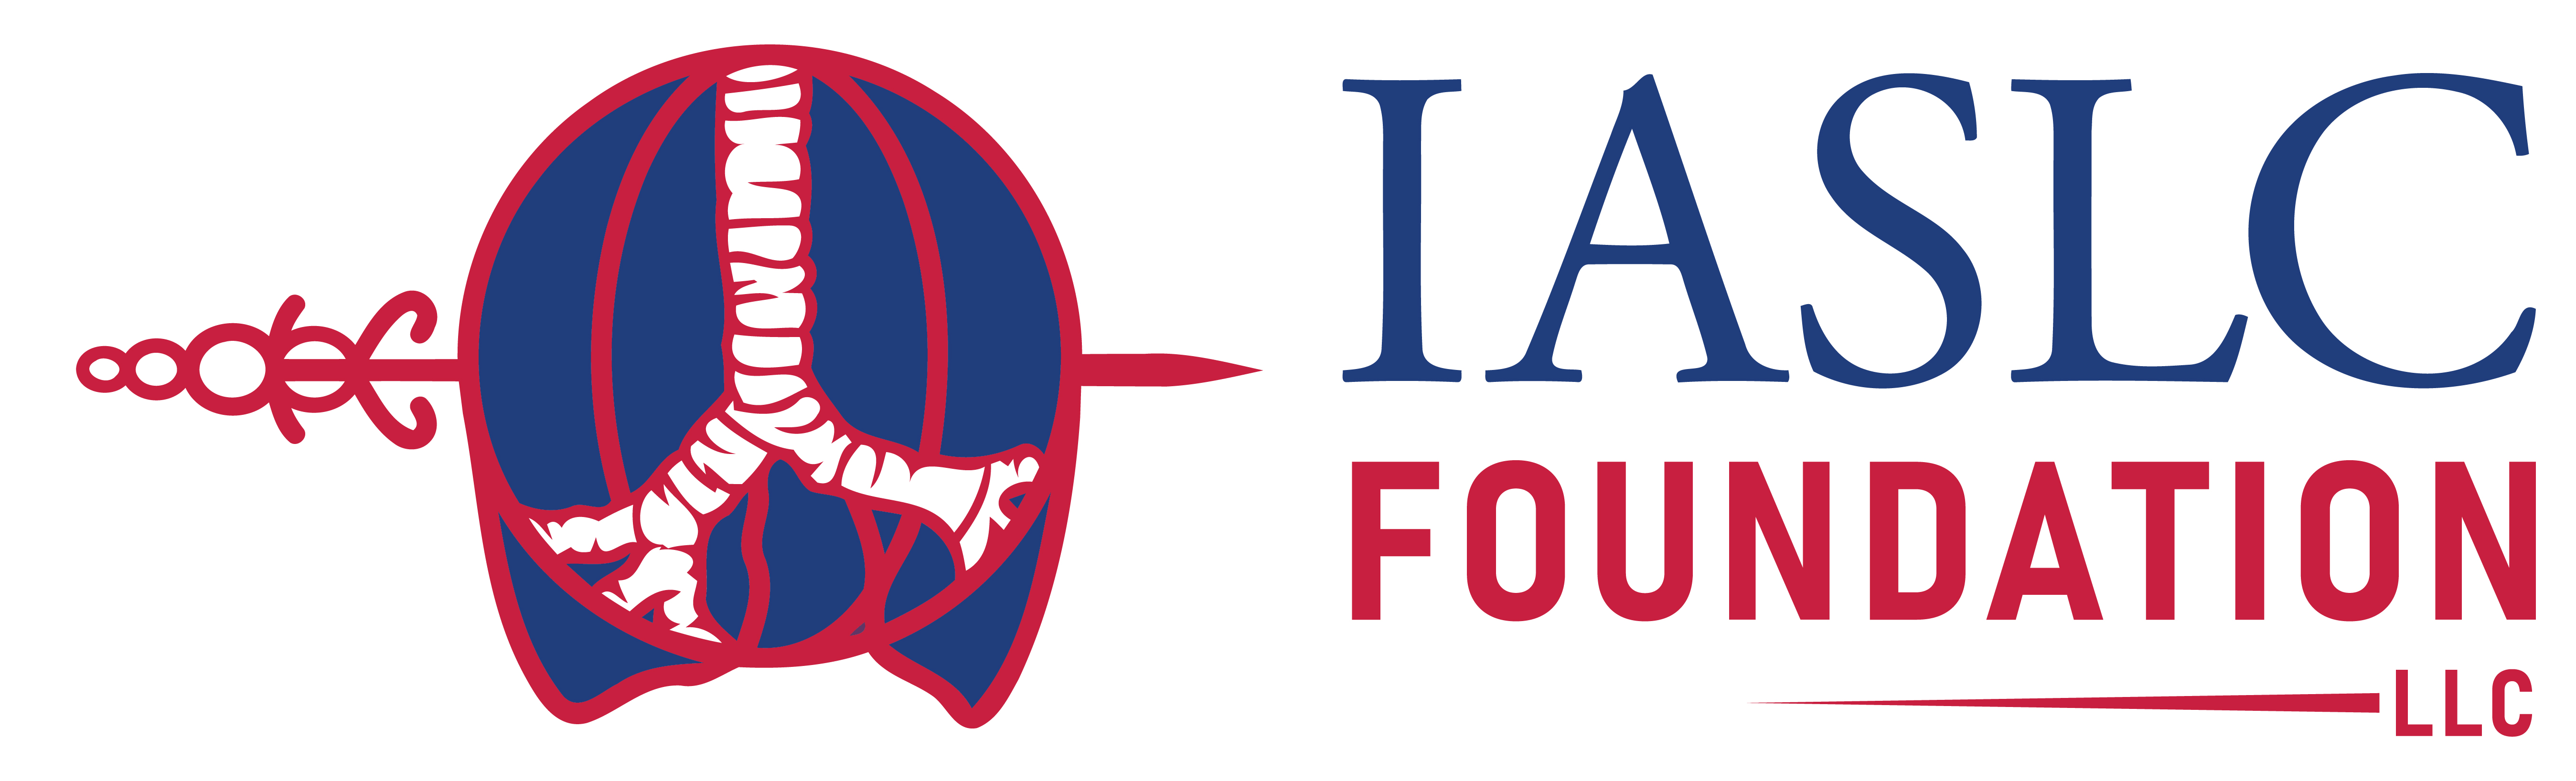 IASLC Foundation, LLC logo